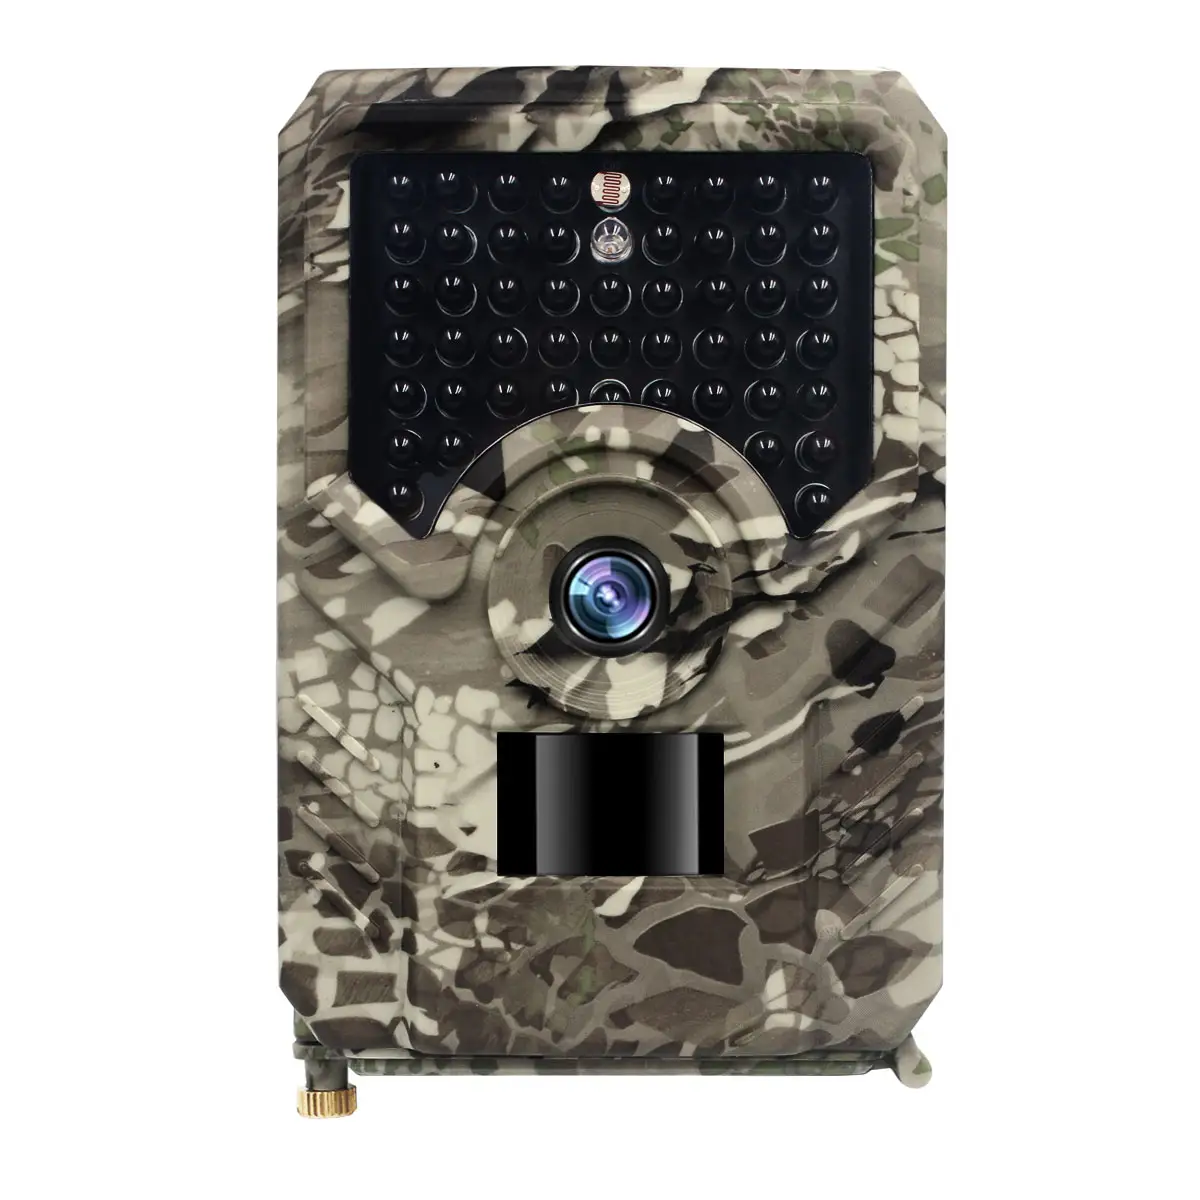 Cámara de rastro - Cámara de caza de 1080P 20MP con sensor de movimiento  gran angular de 120°, sin brillo IR visión nocturna activada por  movimiento